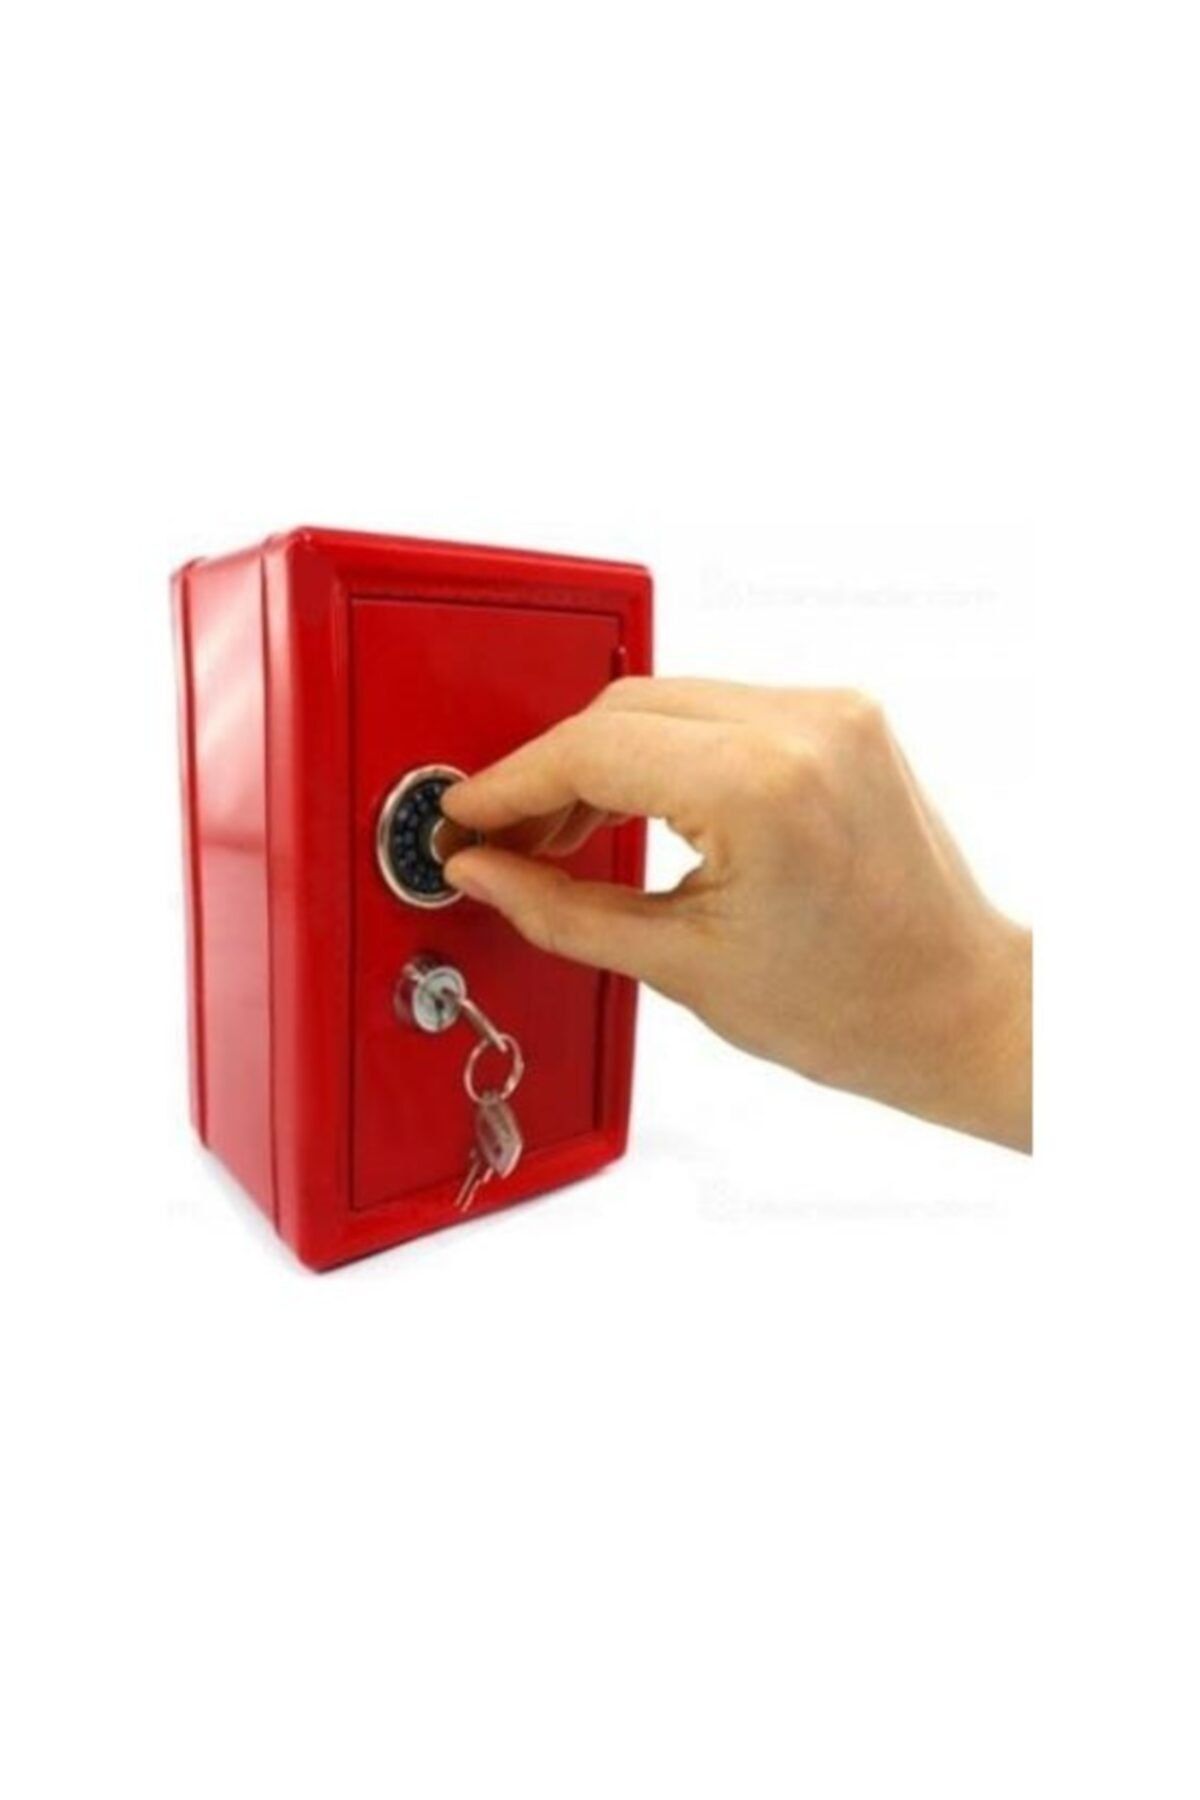 MOBGİFT Kilitli Kasa Kumbara Anahtarlı Mini Metal Para Kasası - Kırmızı